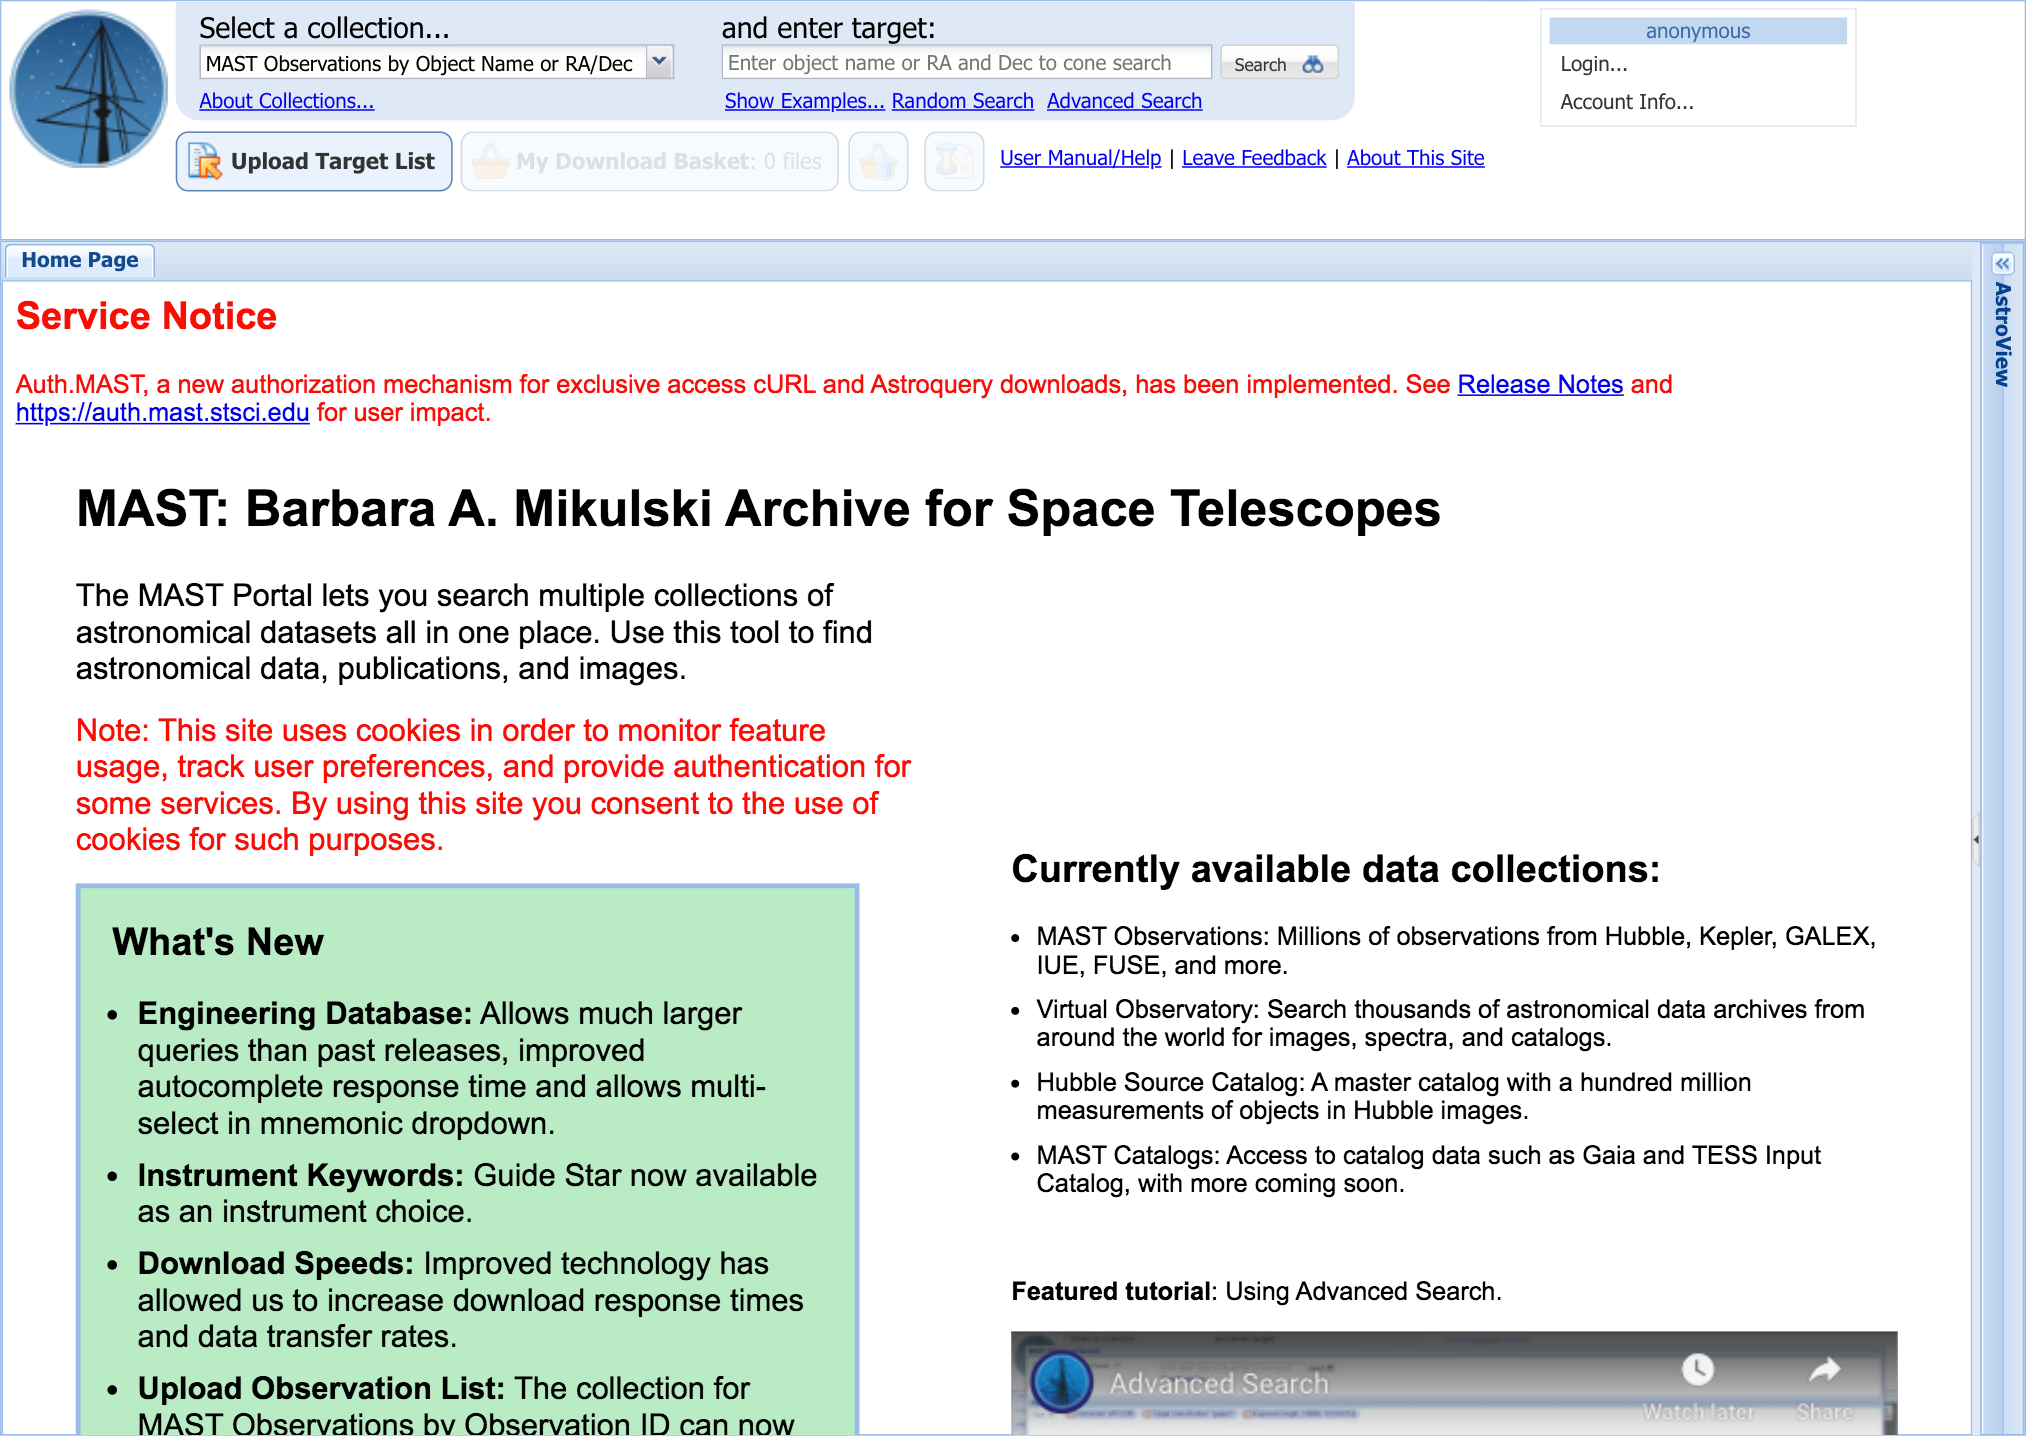 MAST: Barbara A. Mikulski Archive for Space Telescopes